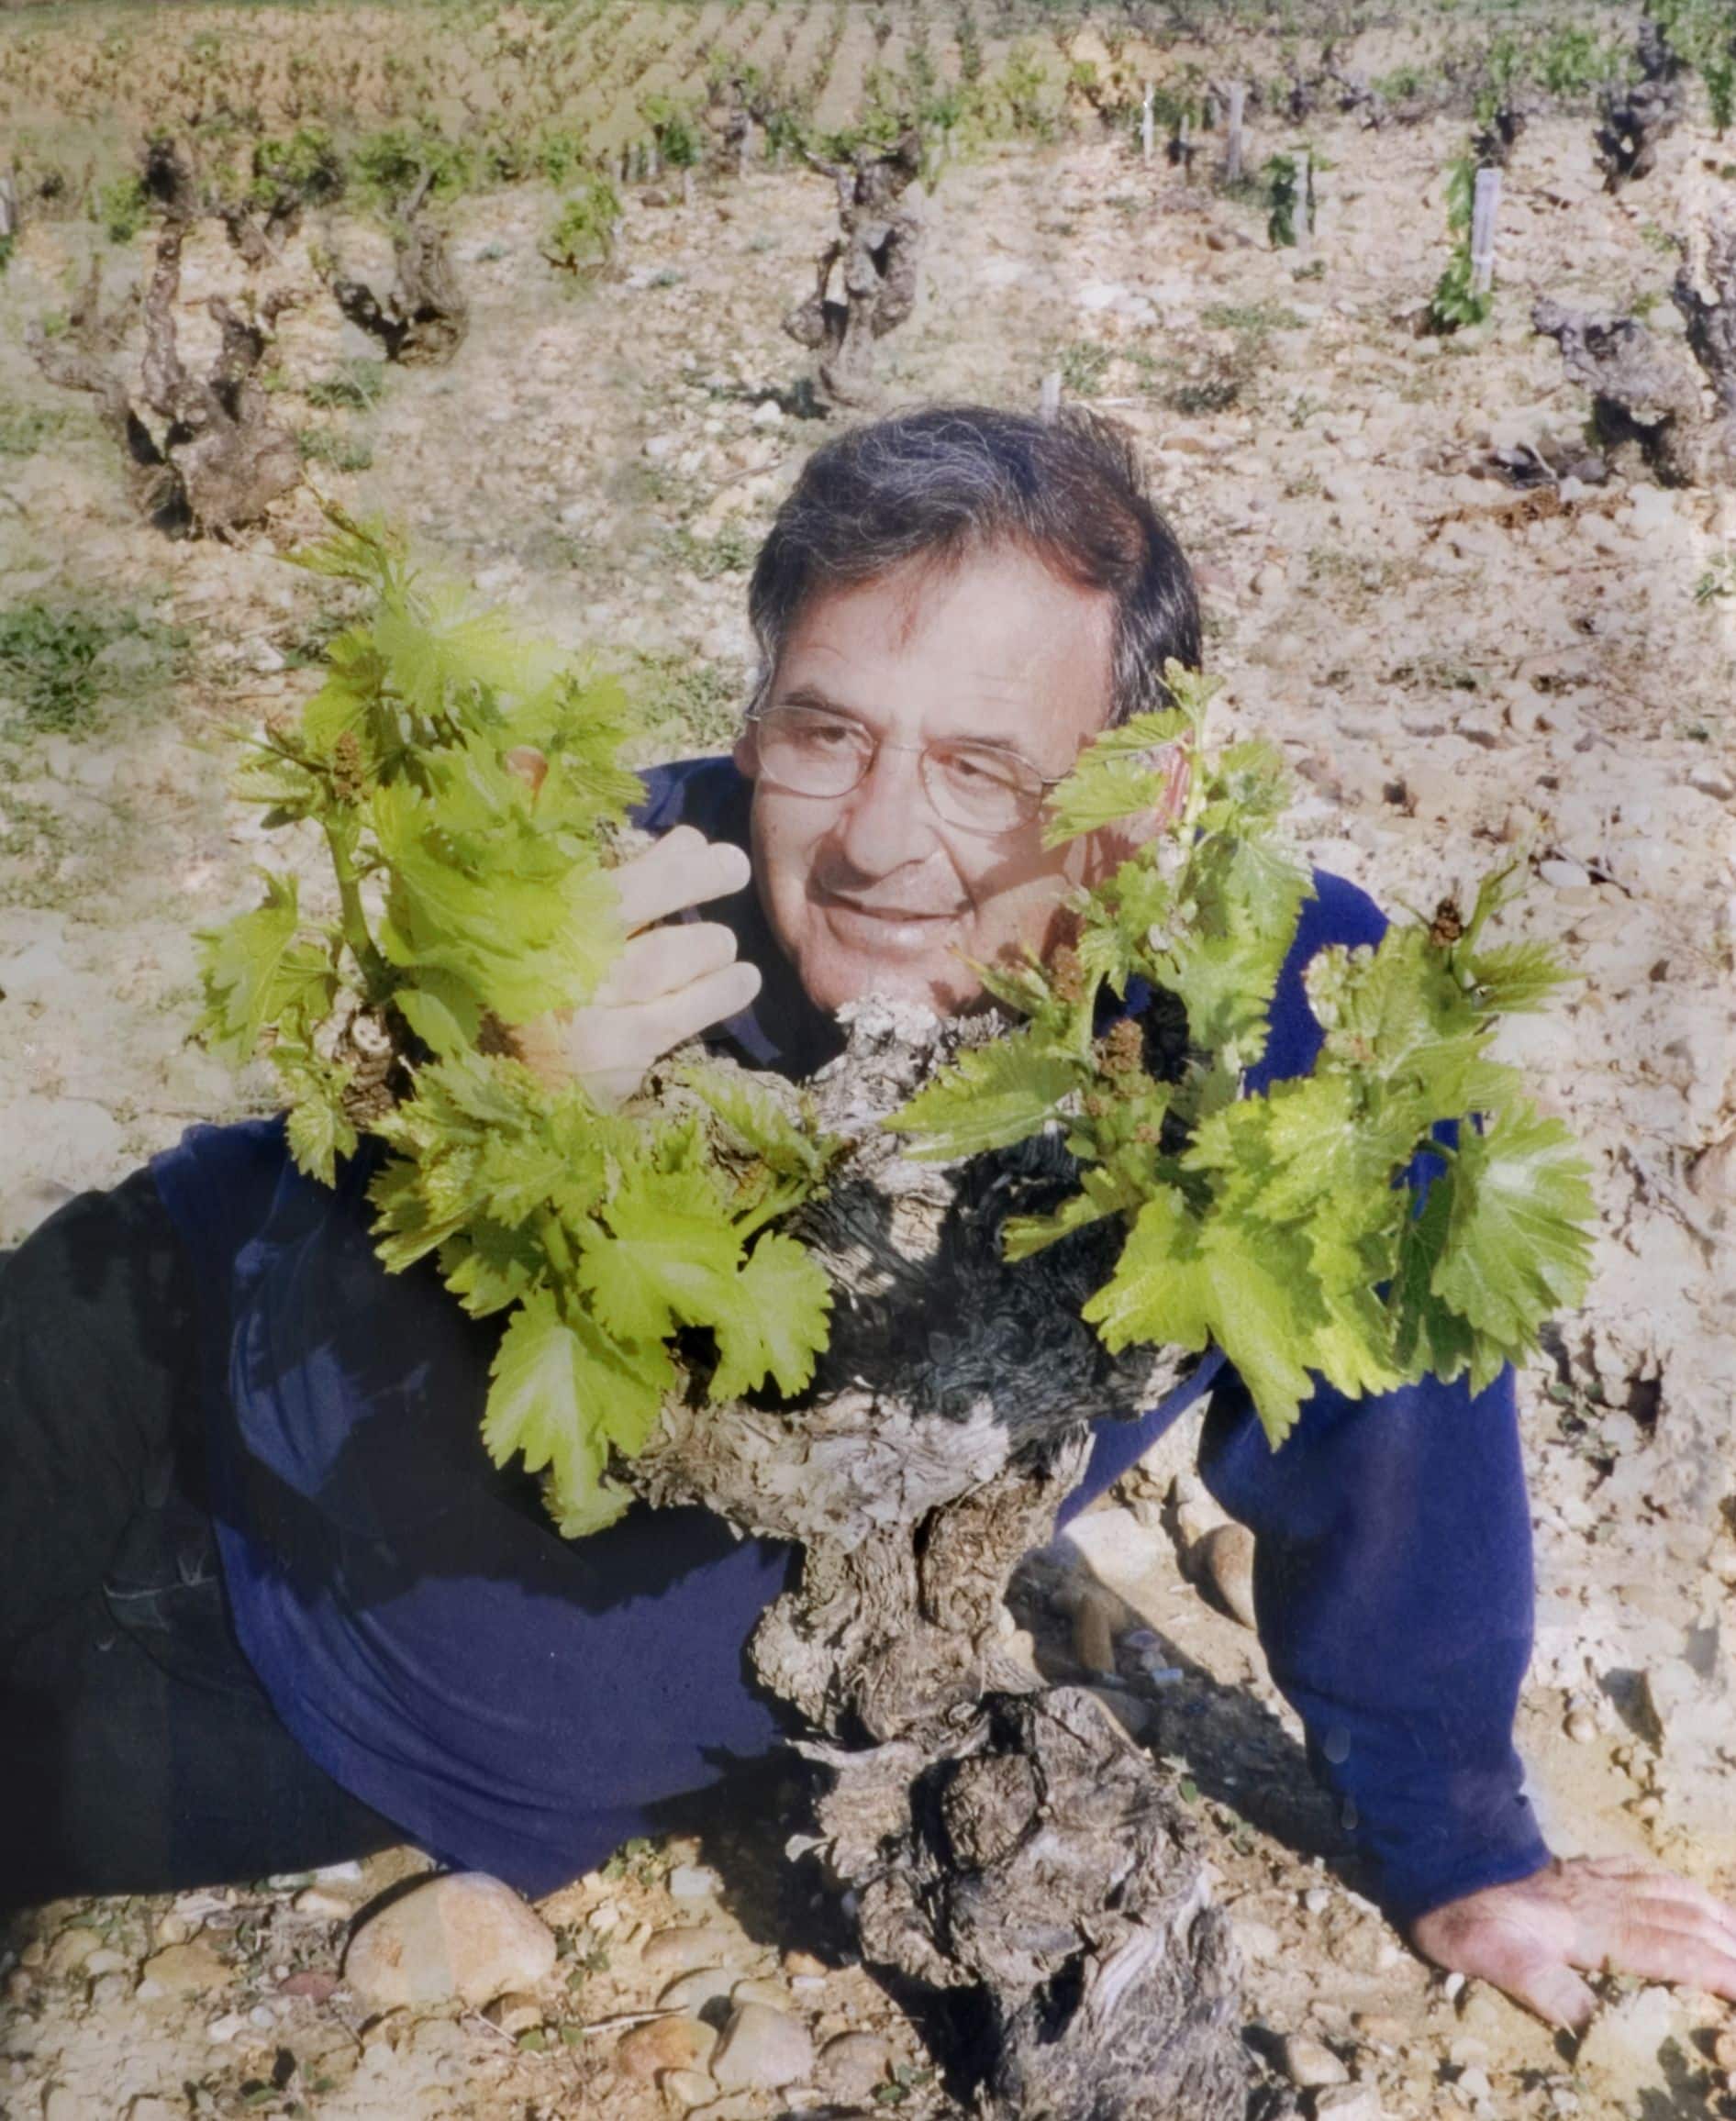 רוני ג'יימס - מייסד, כורם, יינן יקב צרעה. 1945-2008. התמונה צולמה בשאטונף דה פאפ שבצרפת